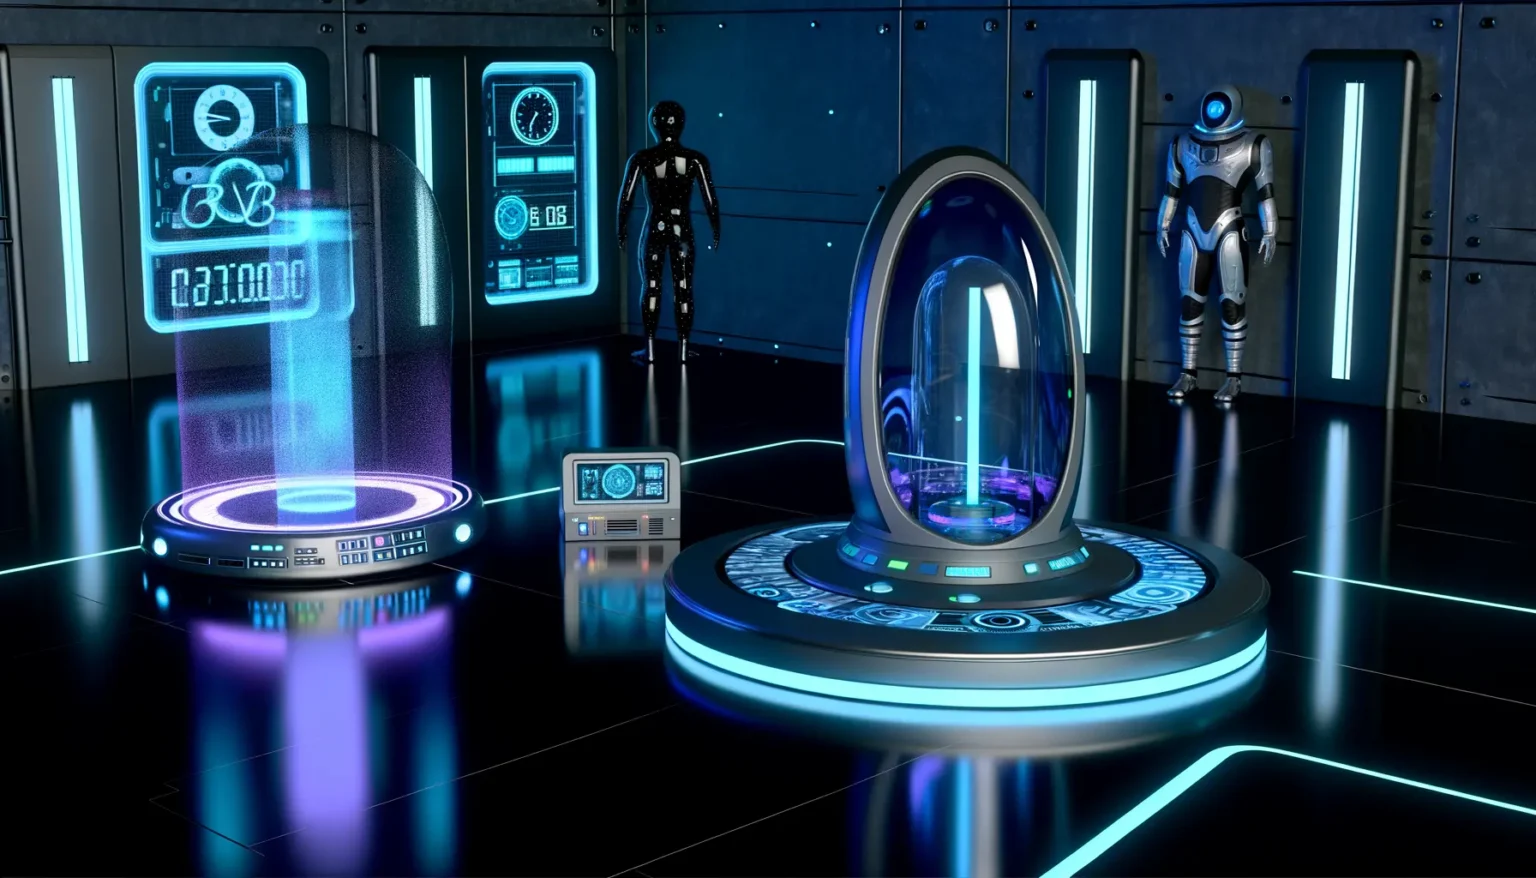 Futuristisches Inneres eines Raumschiffes oder einer Raumstation mit modernen Technologien und holographischen Anzeigen. Links ein holographischer Projektionsständer mit unbekannten Daten, in der Mitte eine Art Kapsel mit bläulicher Energie oder Substanz. Rechts steht ein humanoider Roboter in weiß-blauer Rüstung neben einer weiteren Tür. Die Szene ist in dunklen Blau- und Violetttönen gehalten, mit Neonlinien, die den Boden und die Wände zieren.